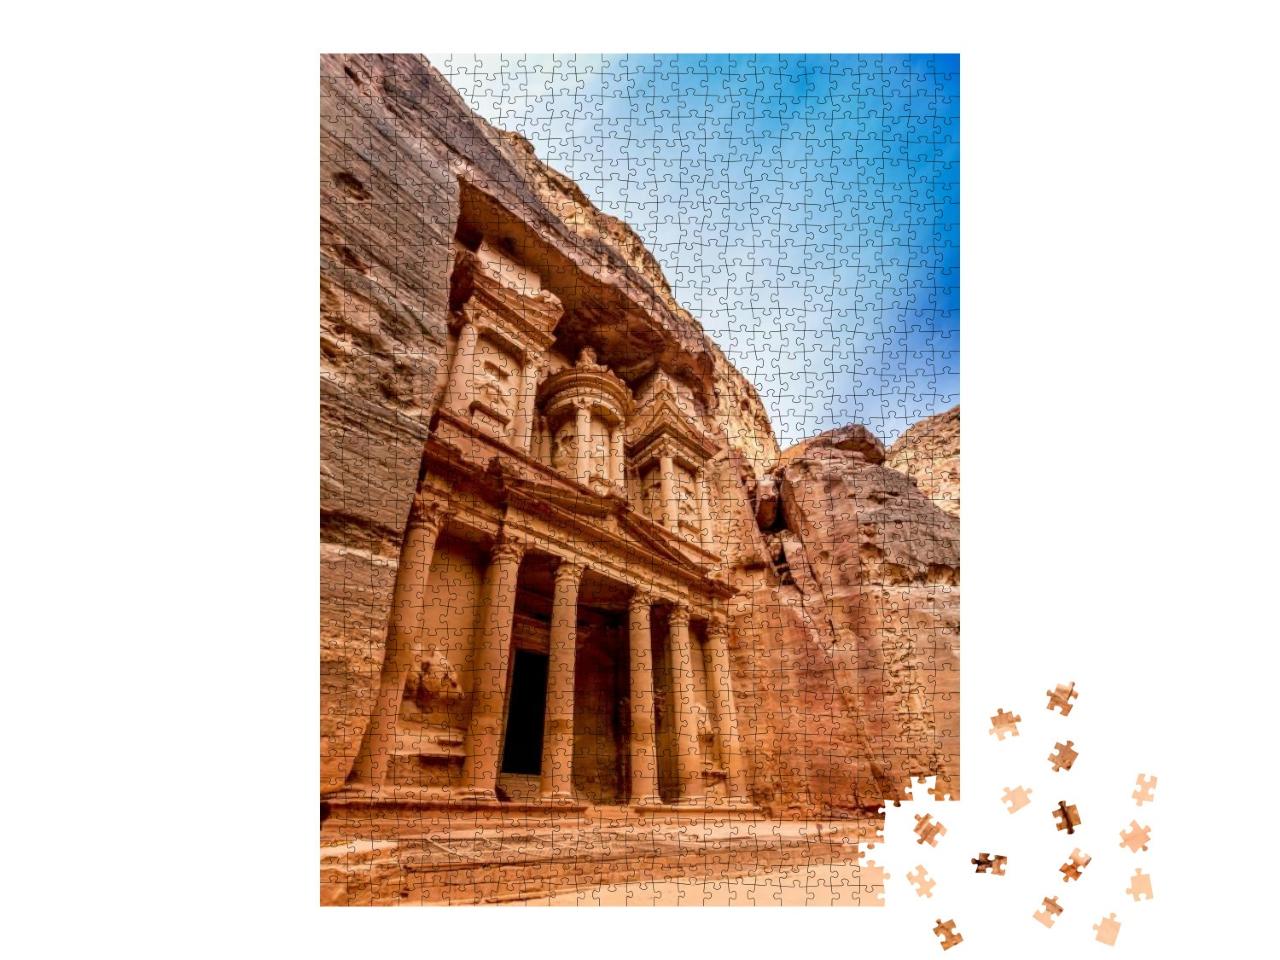 Puzzle 1000 Teile „Die Schatzkammer in Jordanien, Petra“